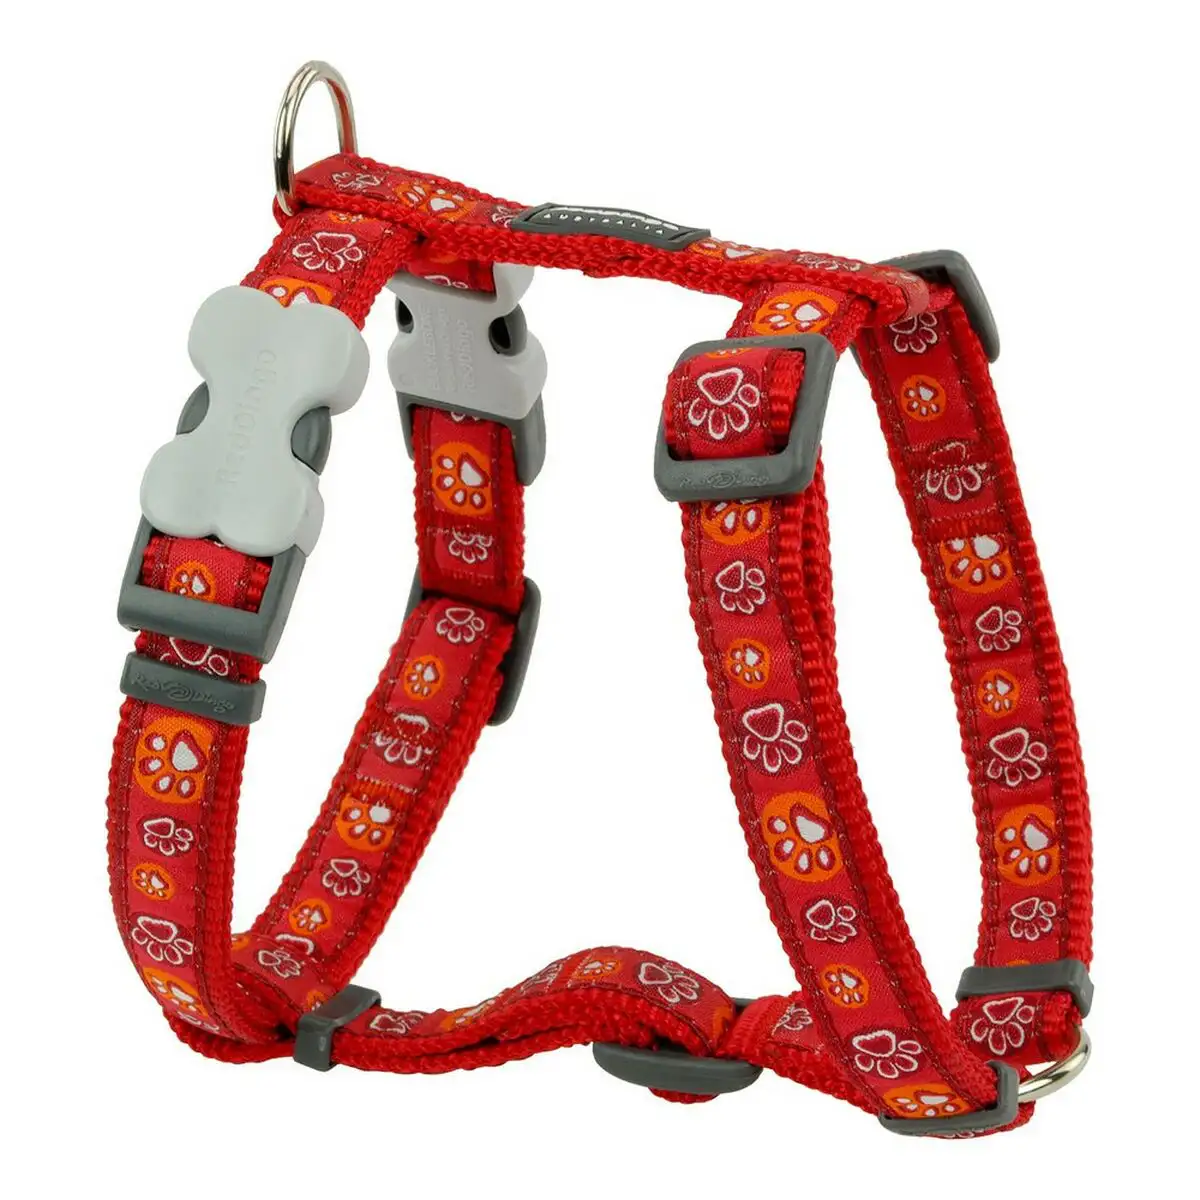 Harnais pour chien red dingo style rouge empreinte des animaux 25 39 cm_9326. Bienvenue chez DIAYTAR SENEGAL - Où Chaque Produit a son Âme. Découvrez notre gamme et choisissez des articles qui résonnent avec votre personnalité et vos valeurs.